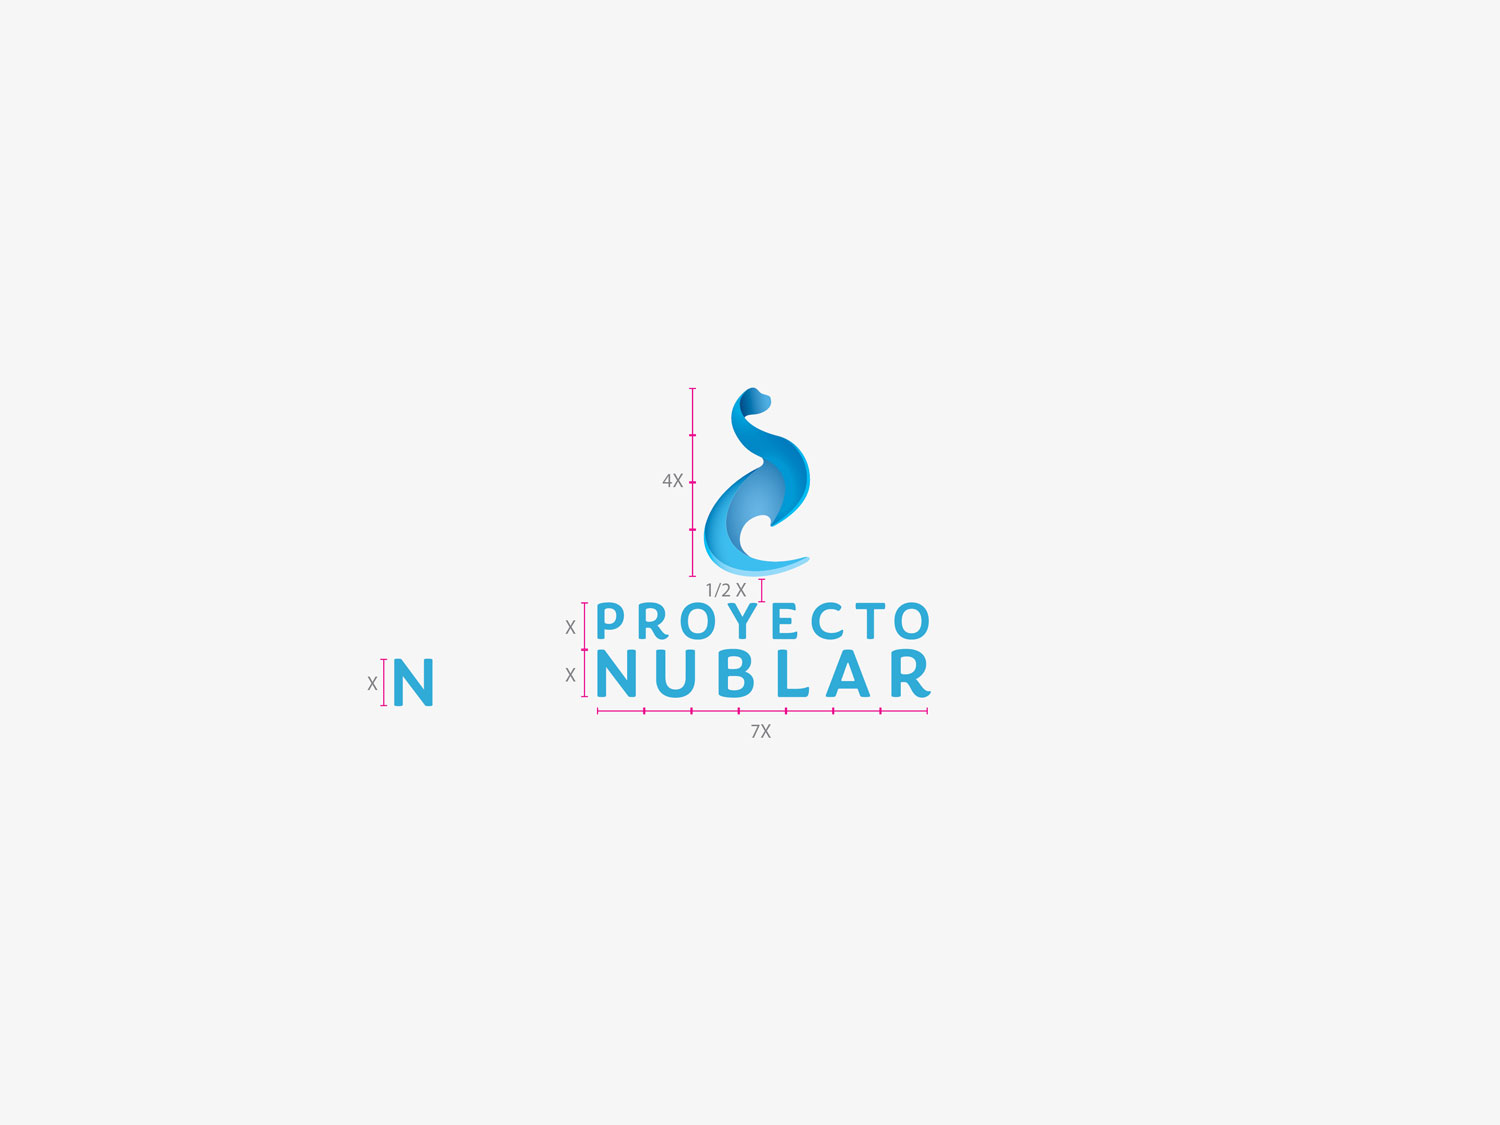 giset design proyecto nublar logo creacion